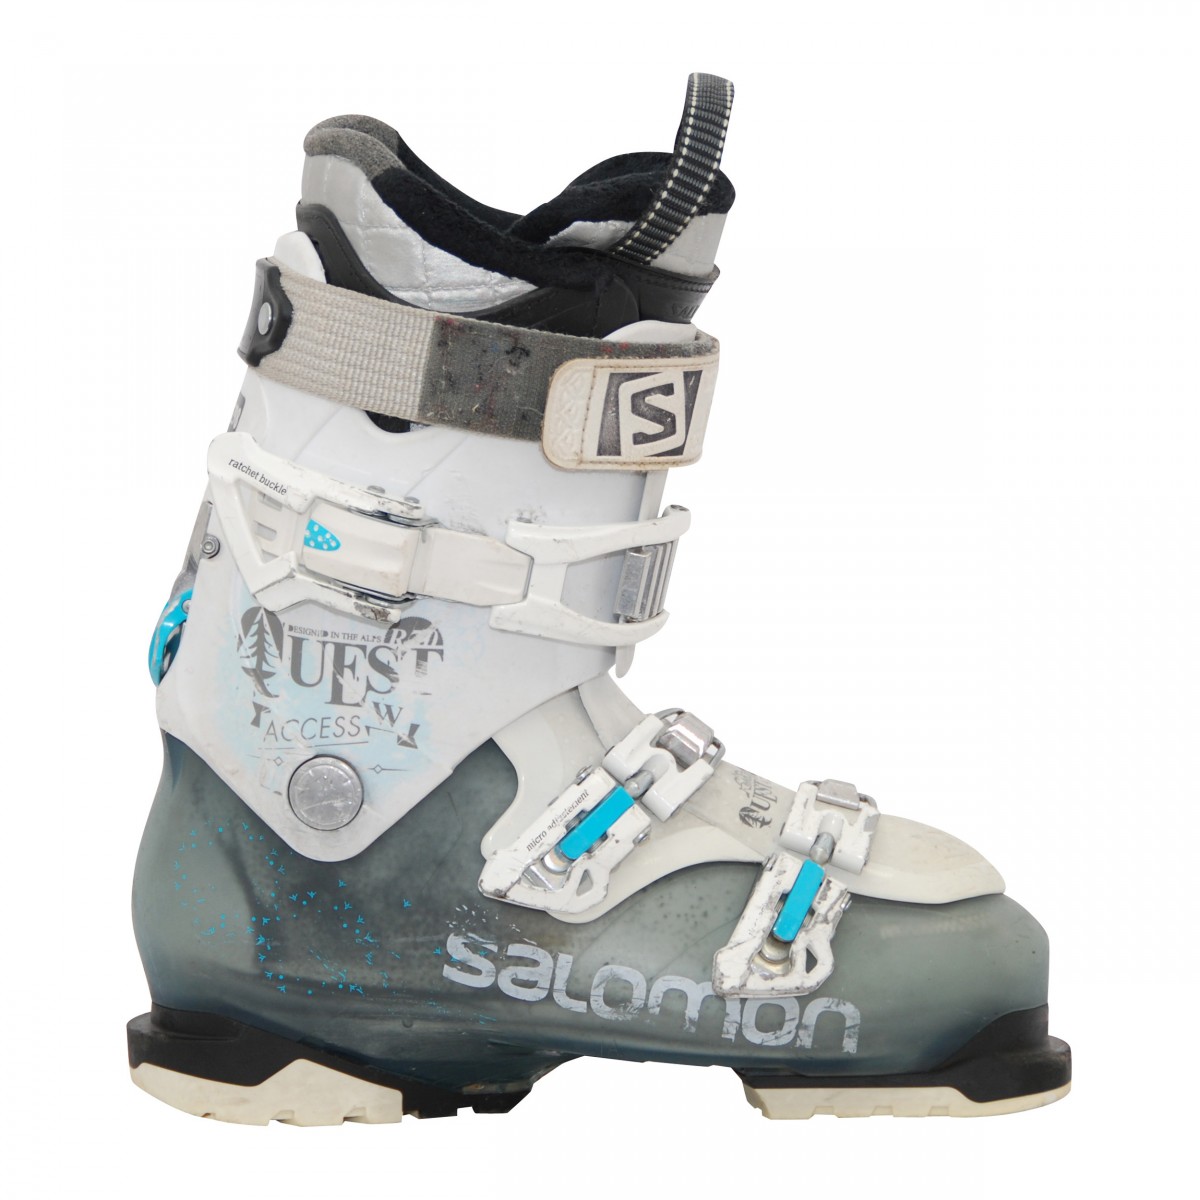 40/25.5MP Chaussures de ski occasion Salomon Quest access R70w Qualité A 